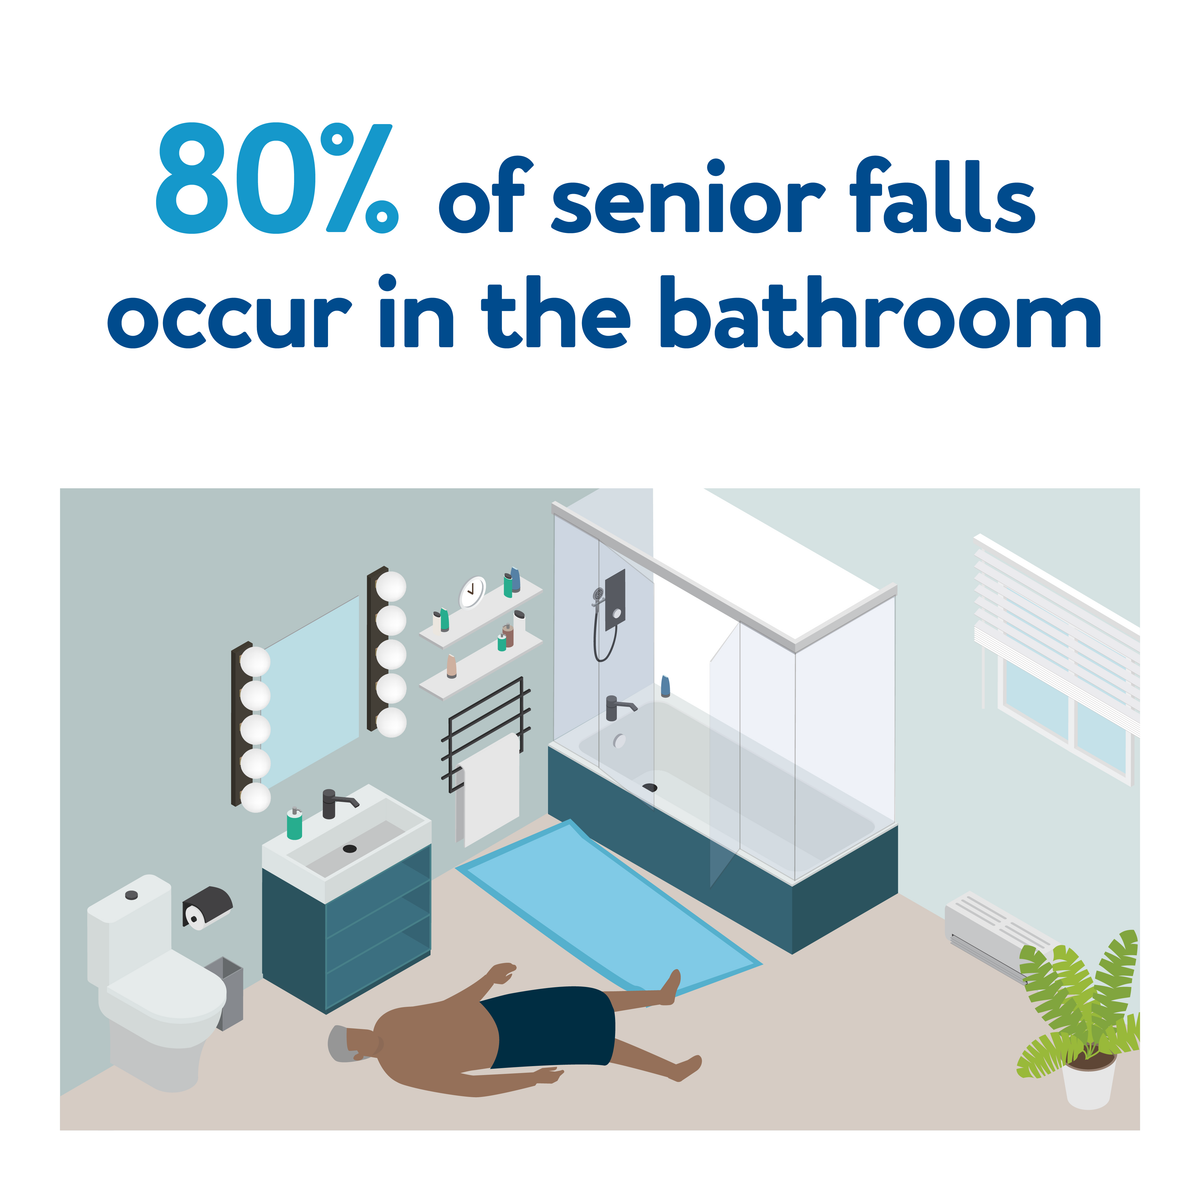 80% of senior falls occur in the bathroom